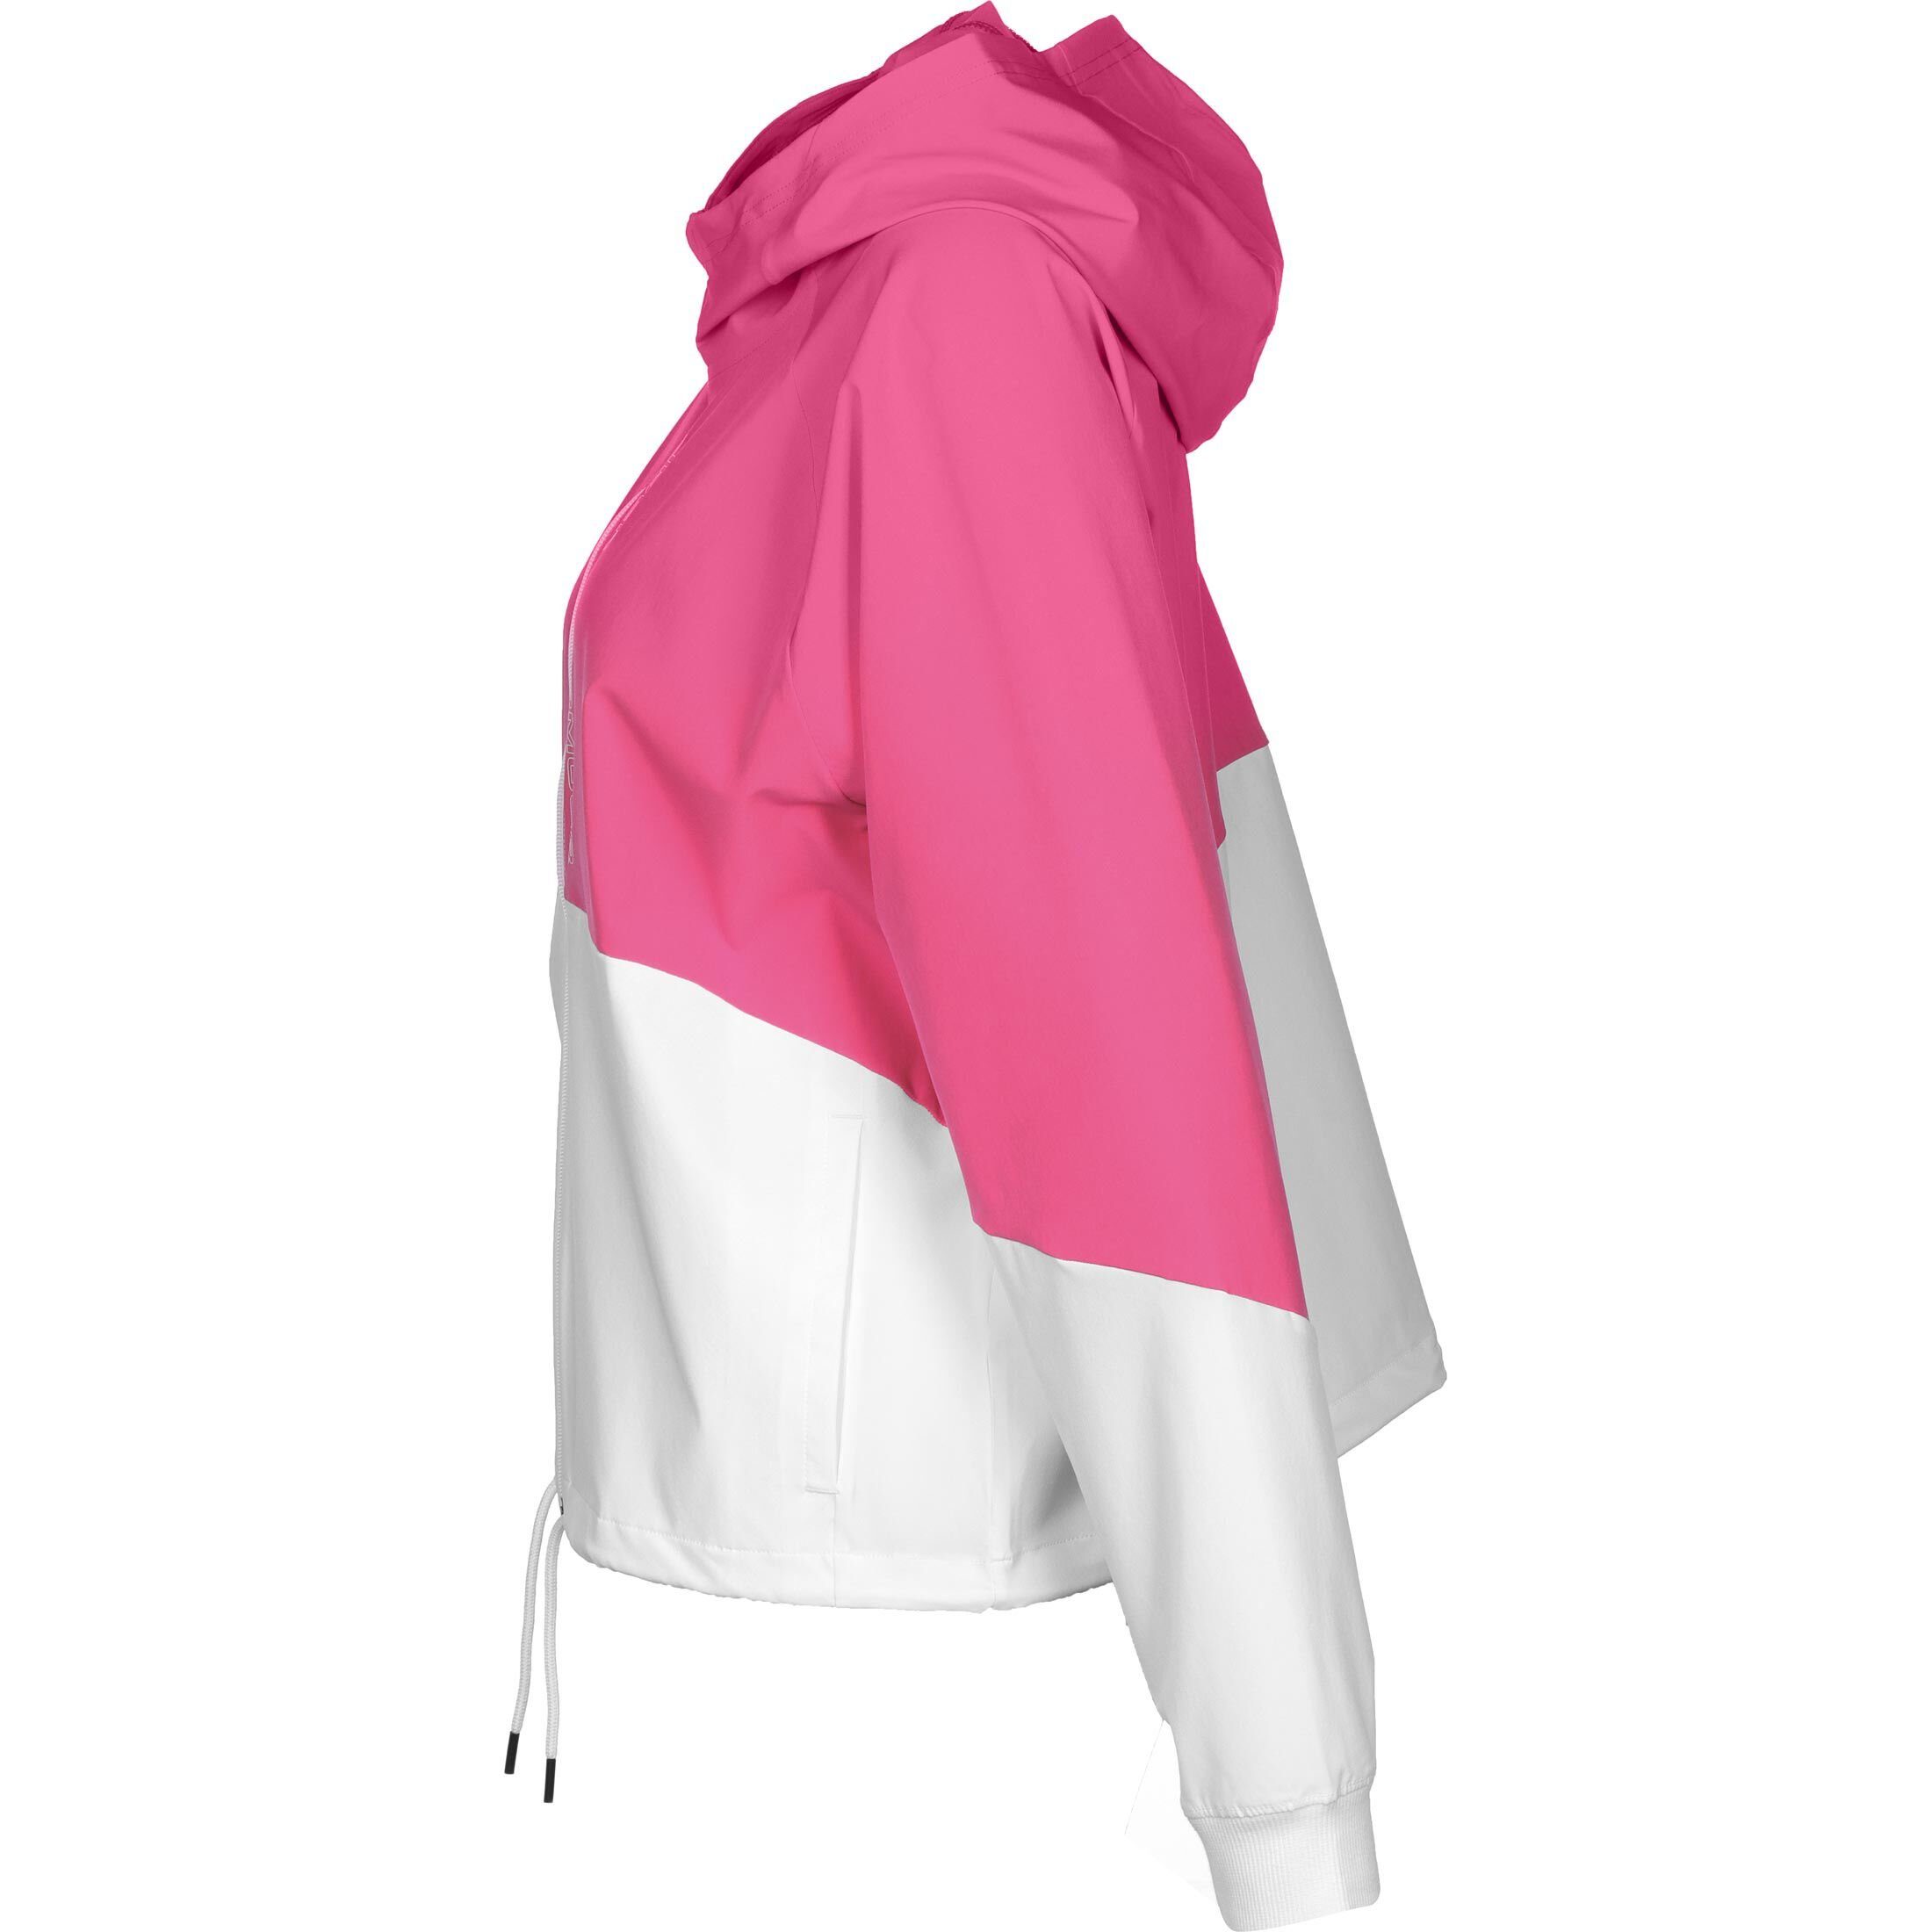 Woven Damen pink weiß / Armour® Jacke Trainingsjacke Under